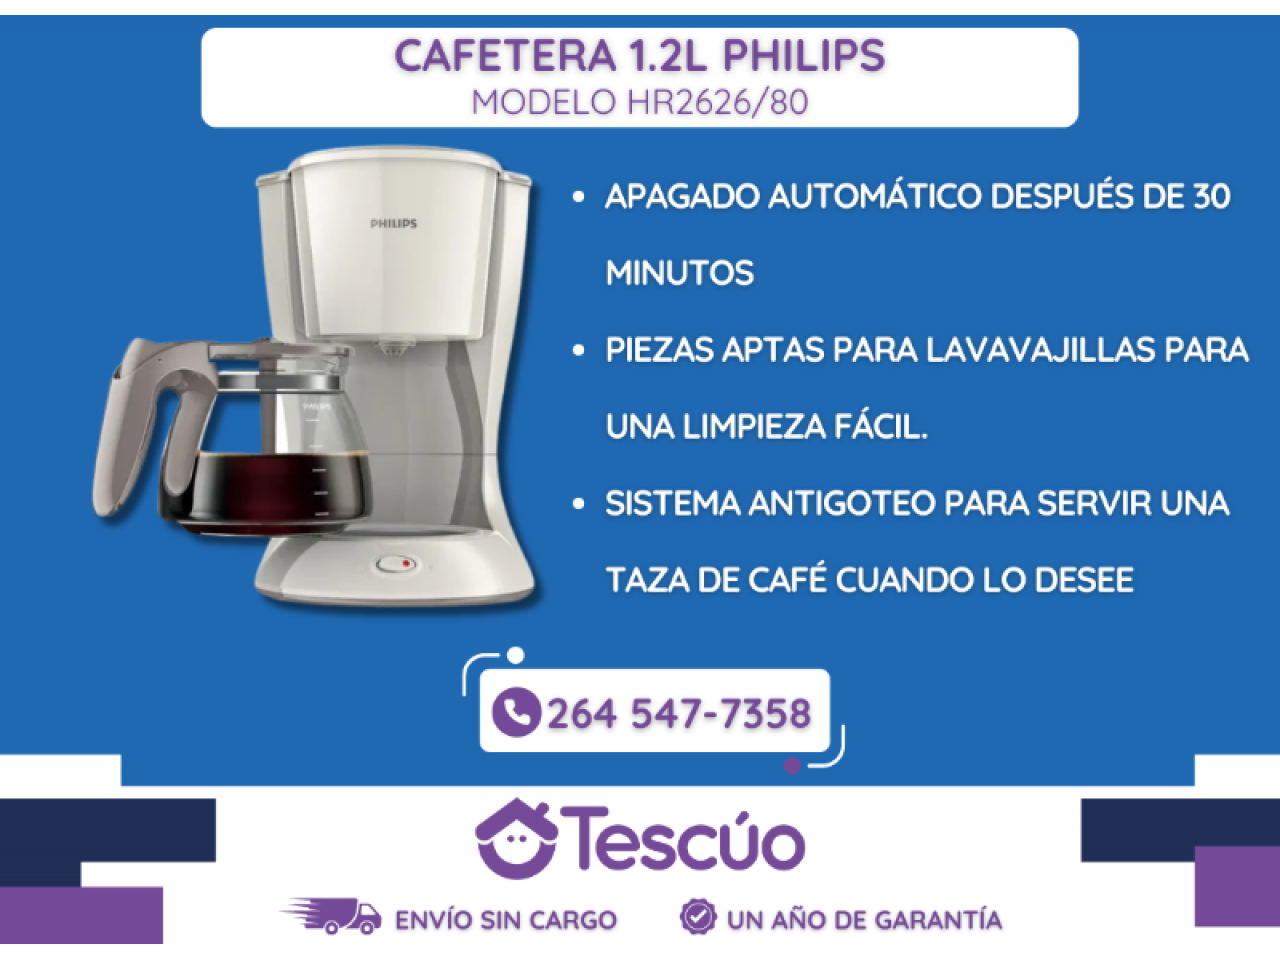 Cafe 1.2l Philips Filtro- Envíos Sin Cargo- Un Año De Garantía